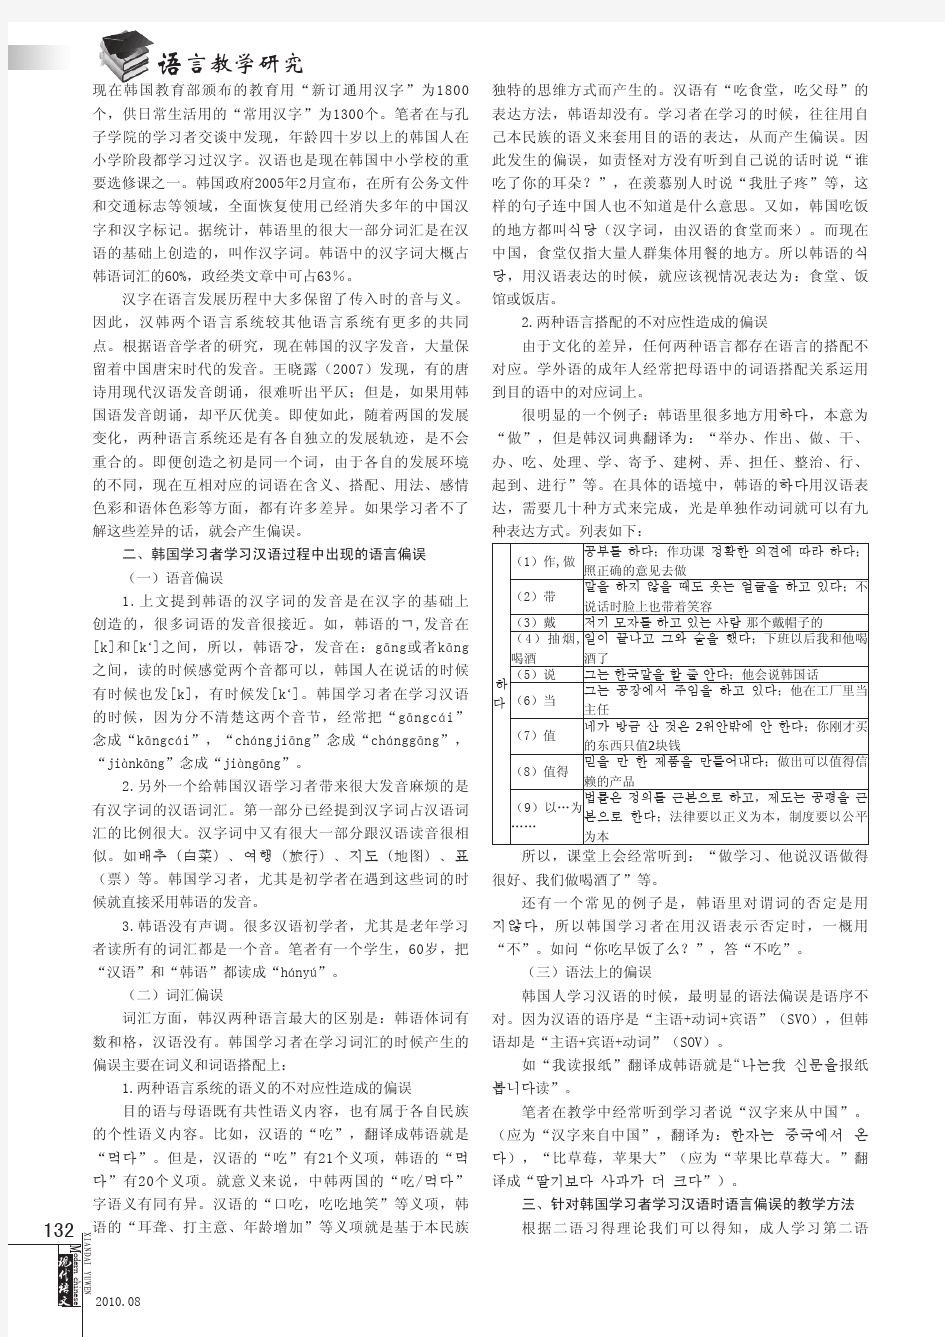 韩国人学汉语的偏误分析及相应的对韩汉语教学法